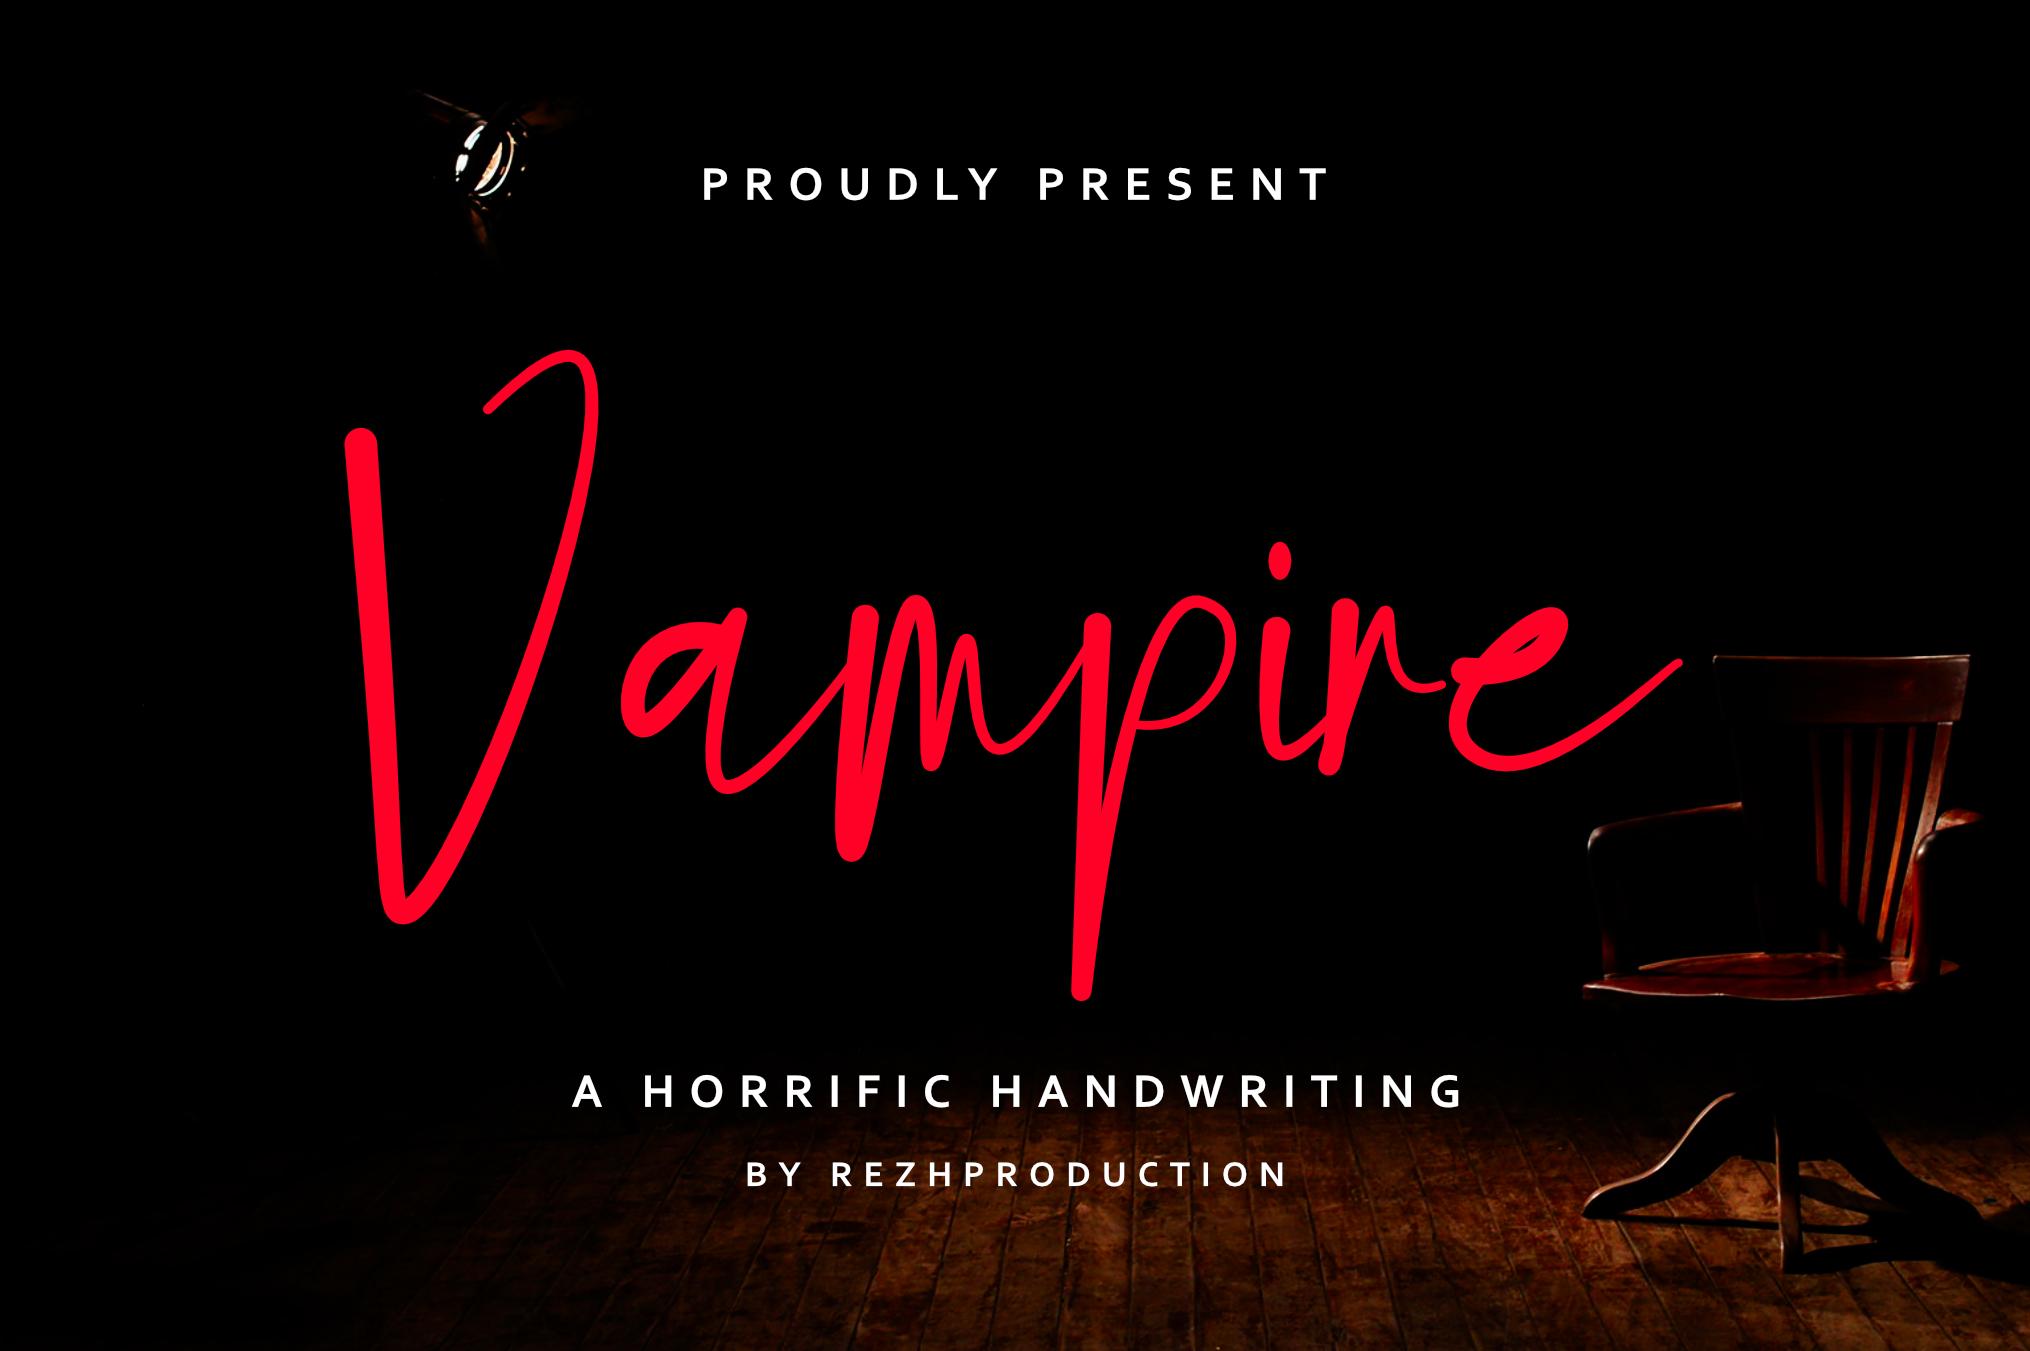 Vampire Font